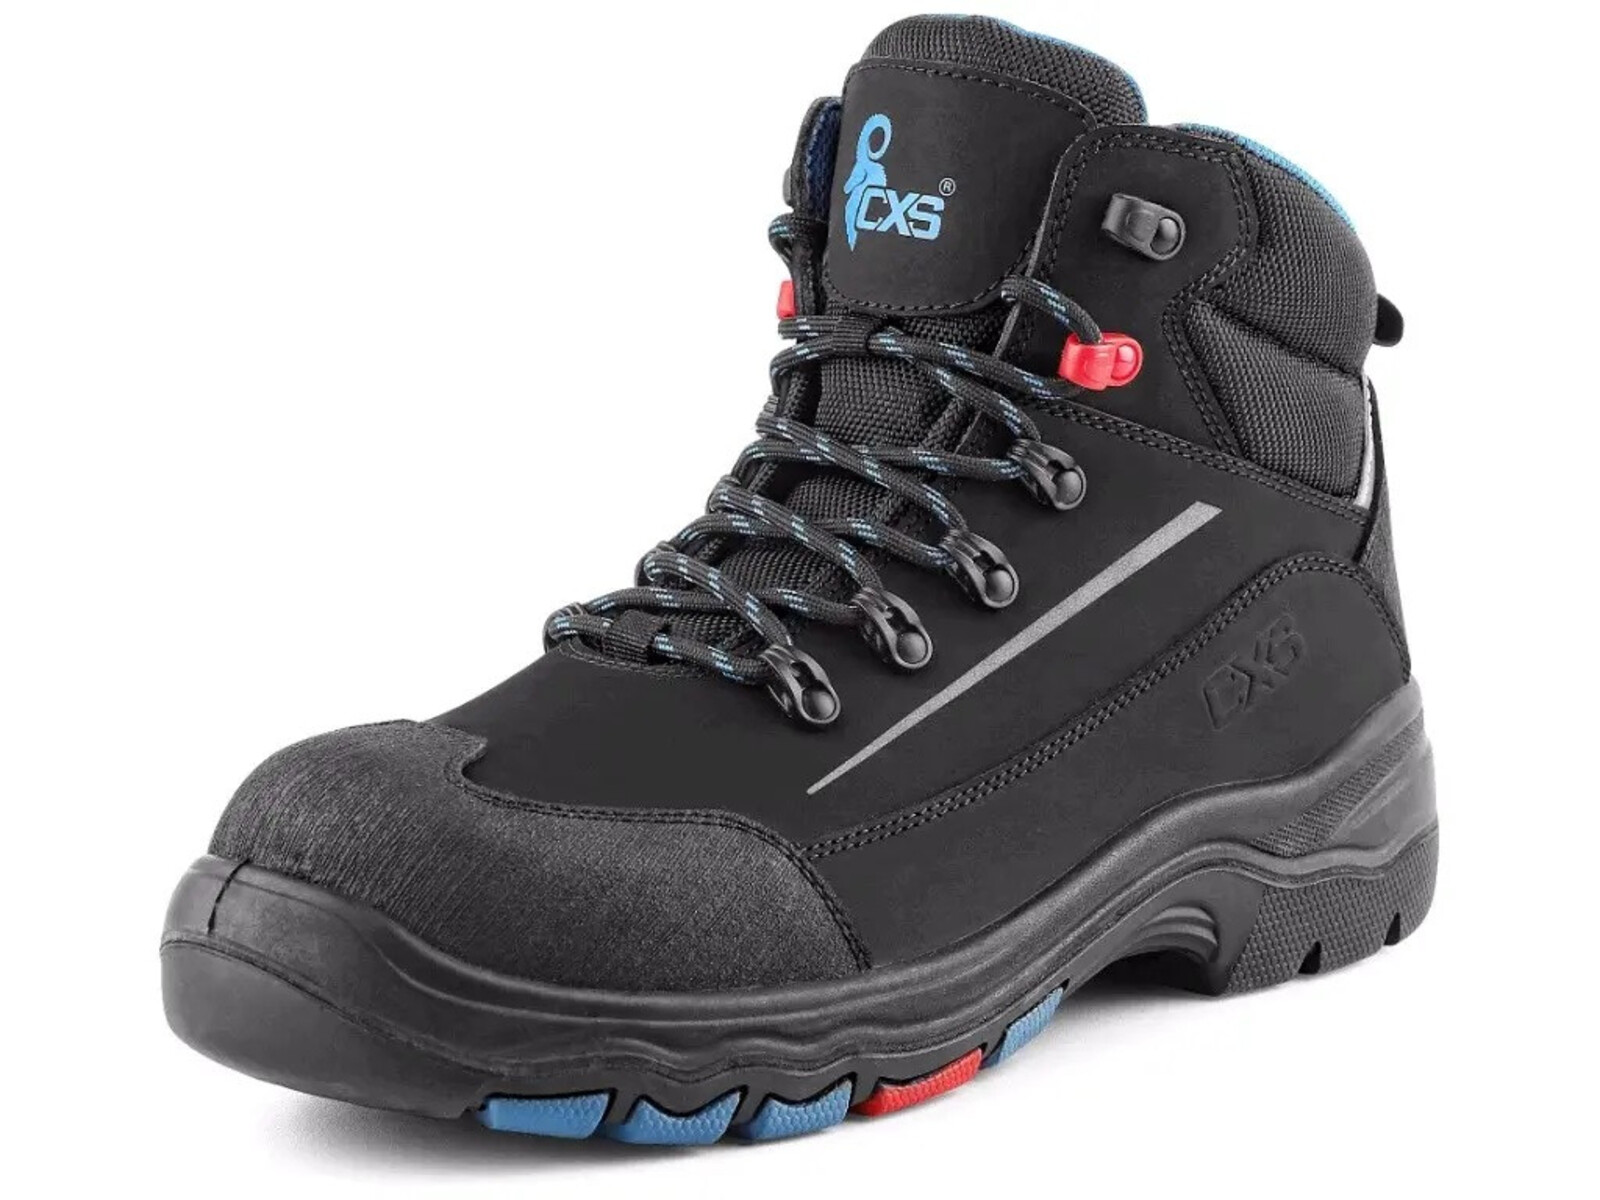 Bezpečnostná členková obuv CXS Land Senja S3S FO HRO SC SR - veľkosť: 46, farba: čierna/modrá